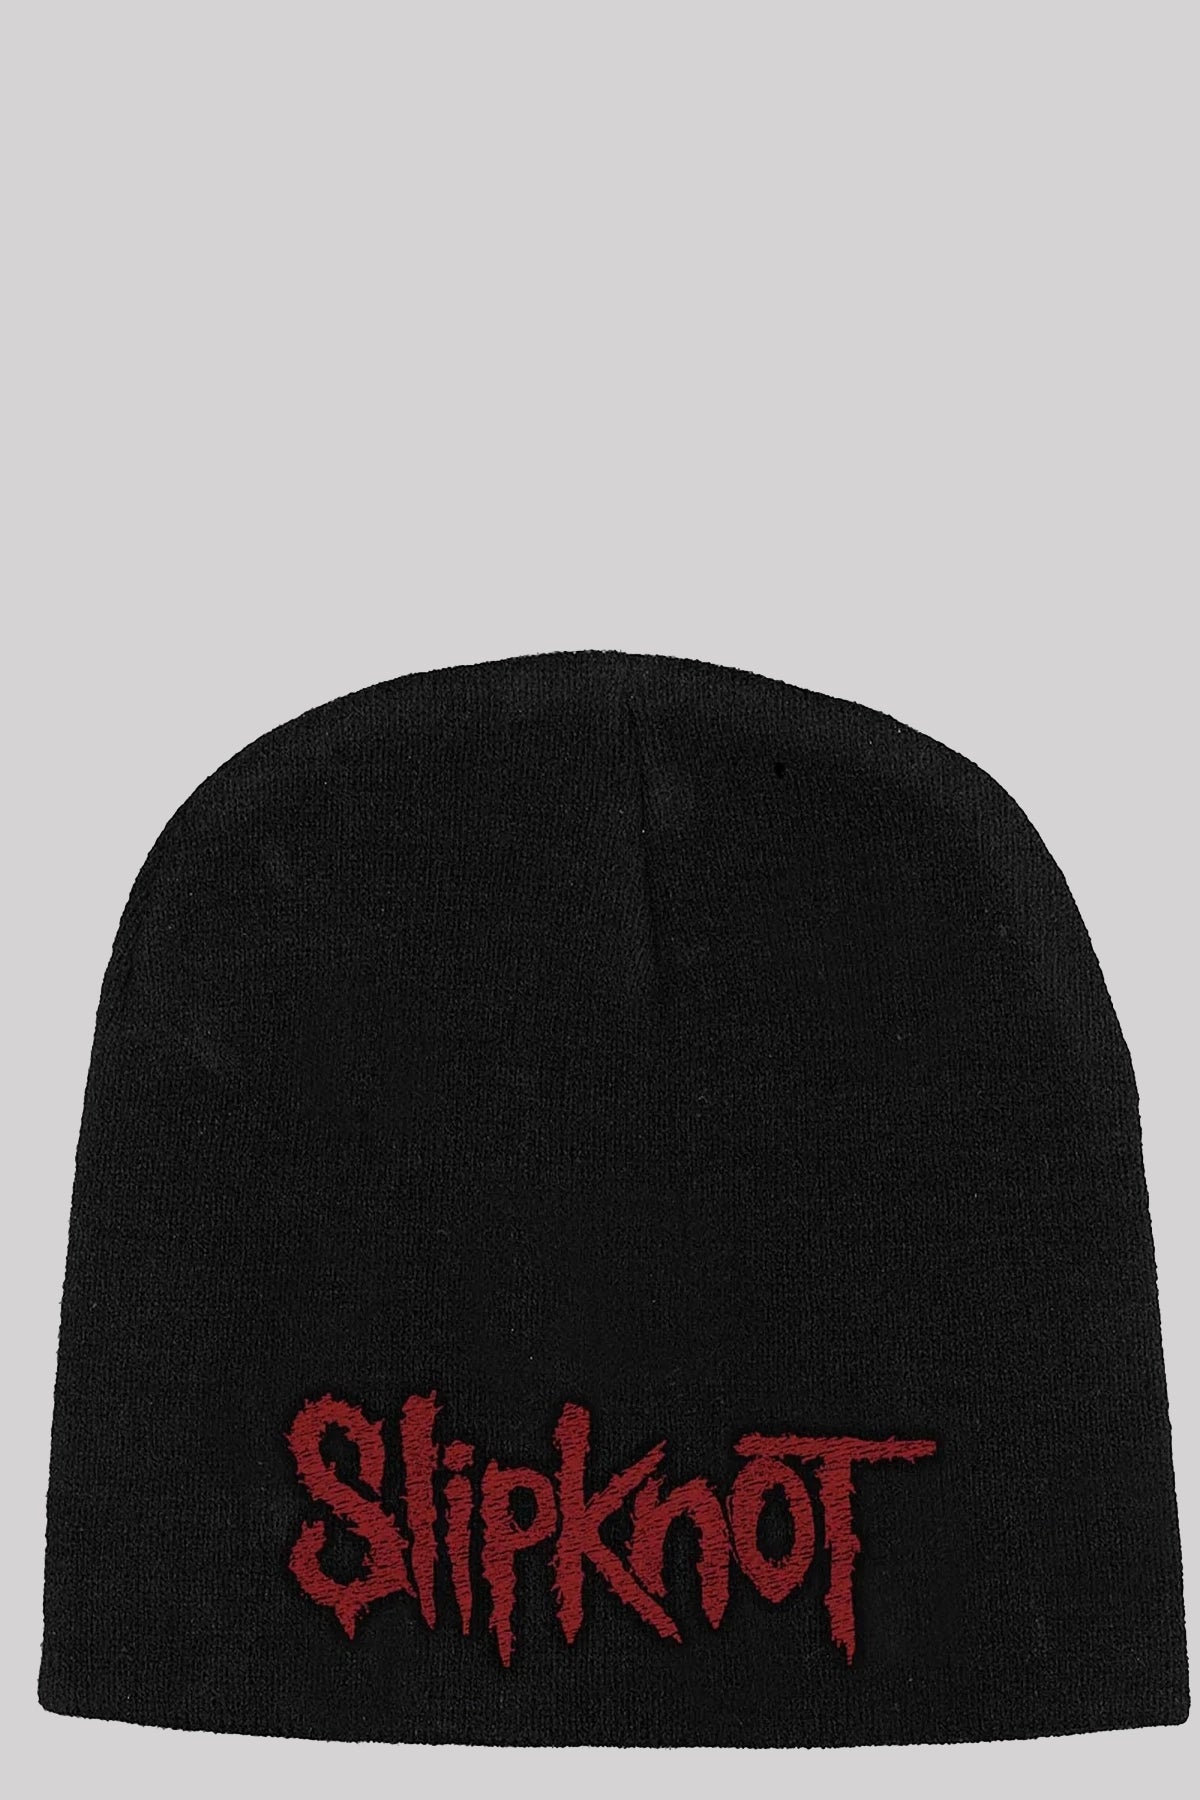 Slipknot Unisex Beanie Hat: Logo Official Merchandise